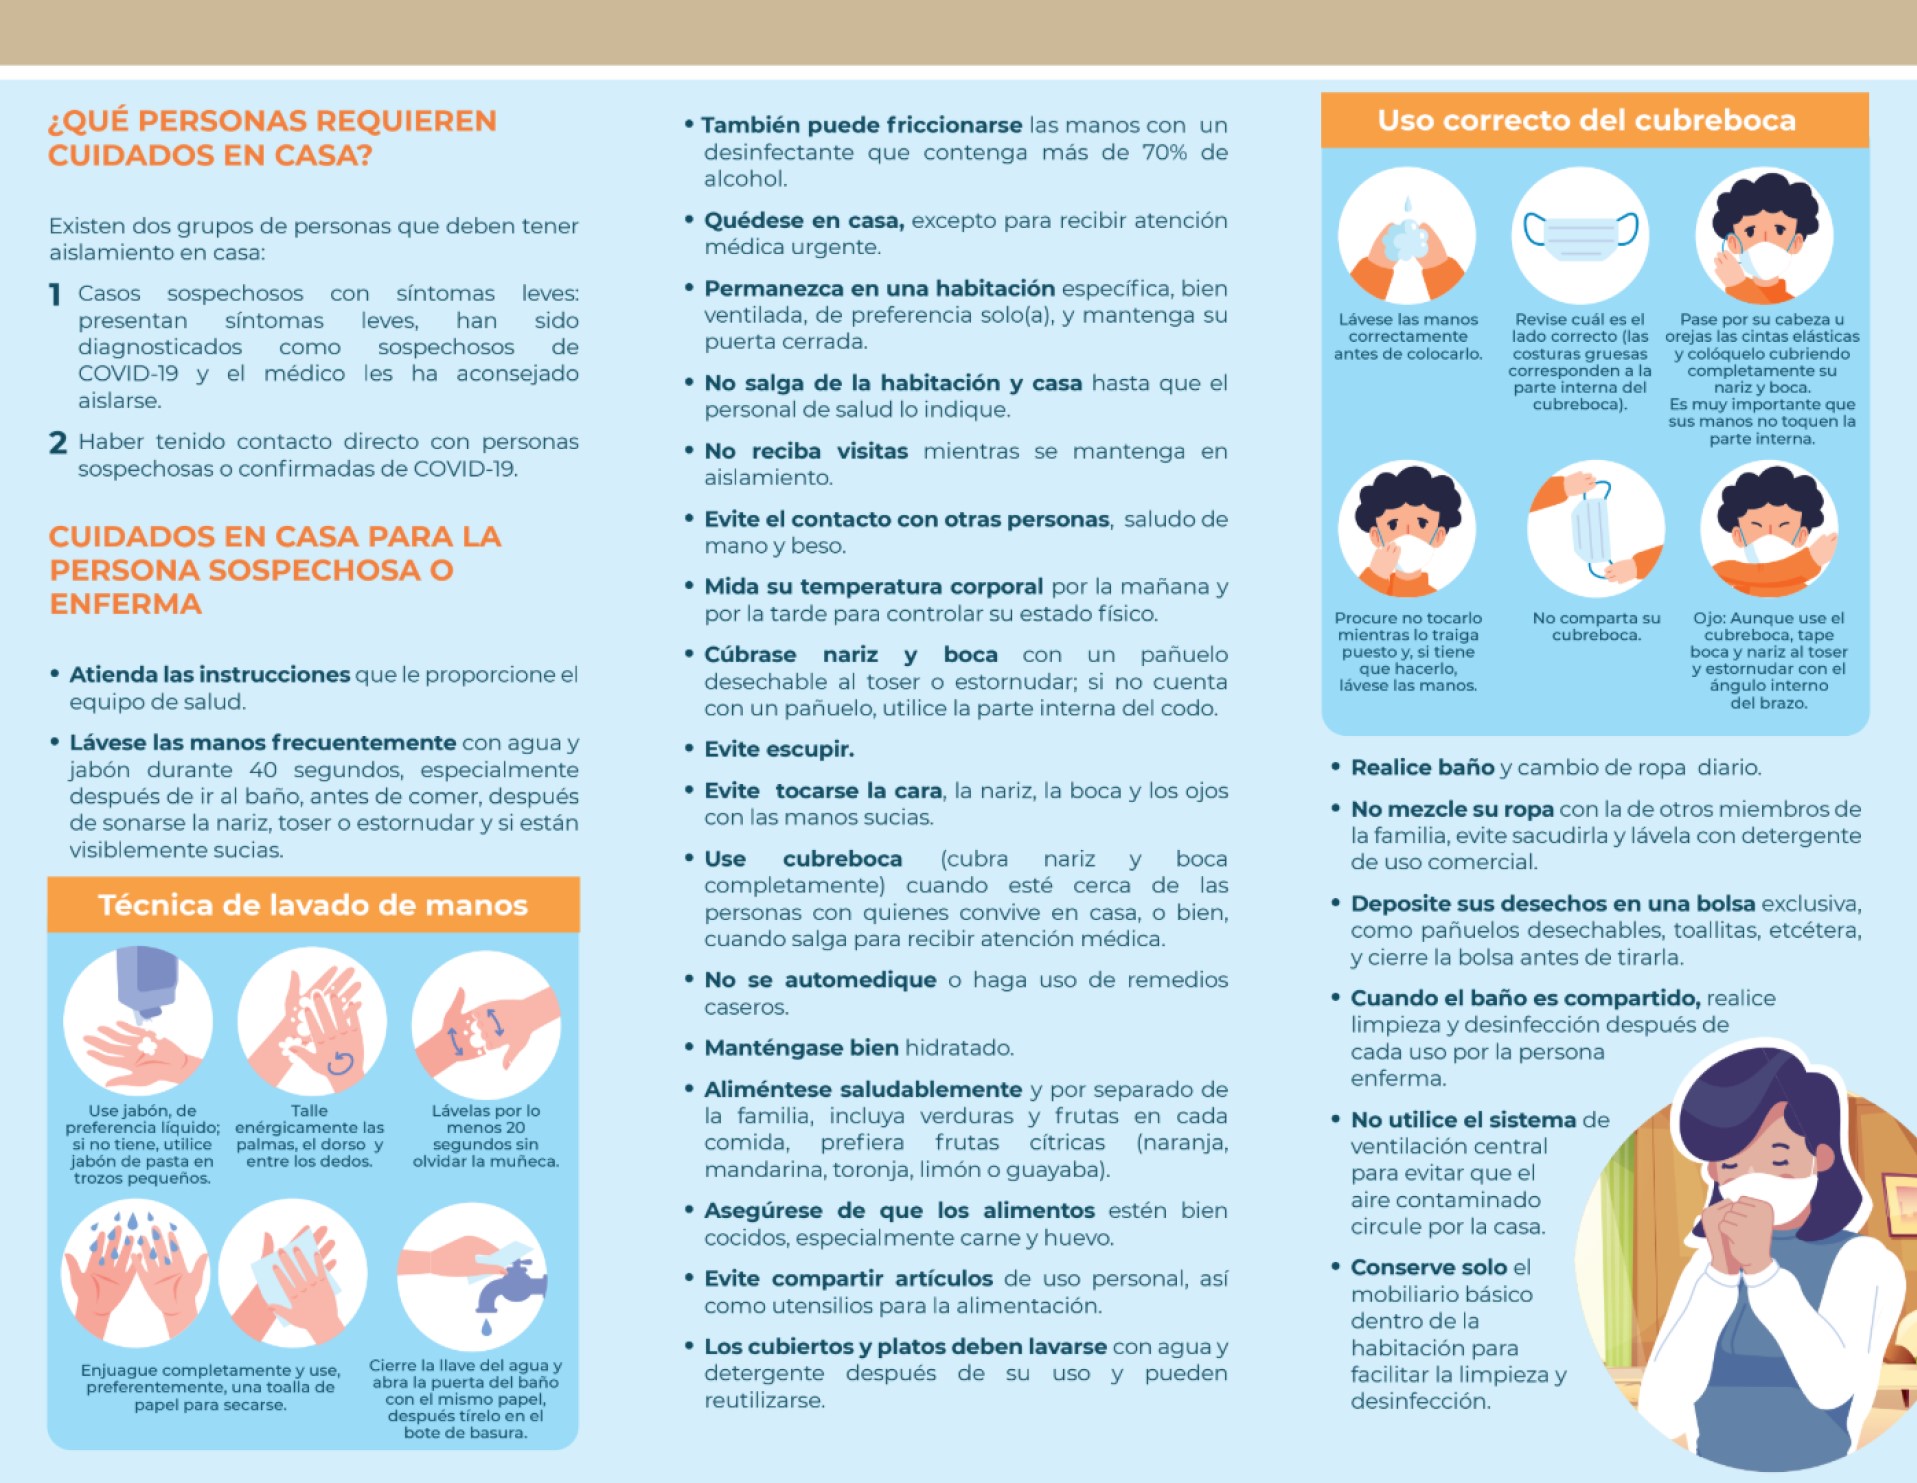 Infografía sobre cuidados en casa para personas sospechosas de COVID-19 del IMSS (2)